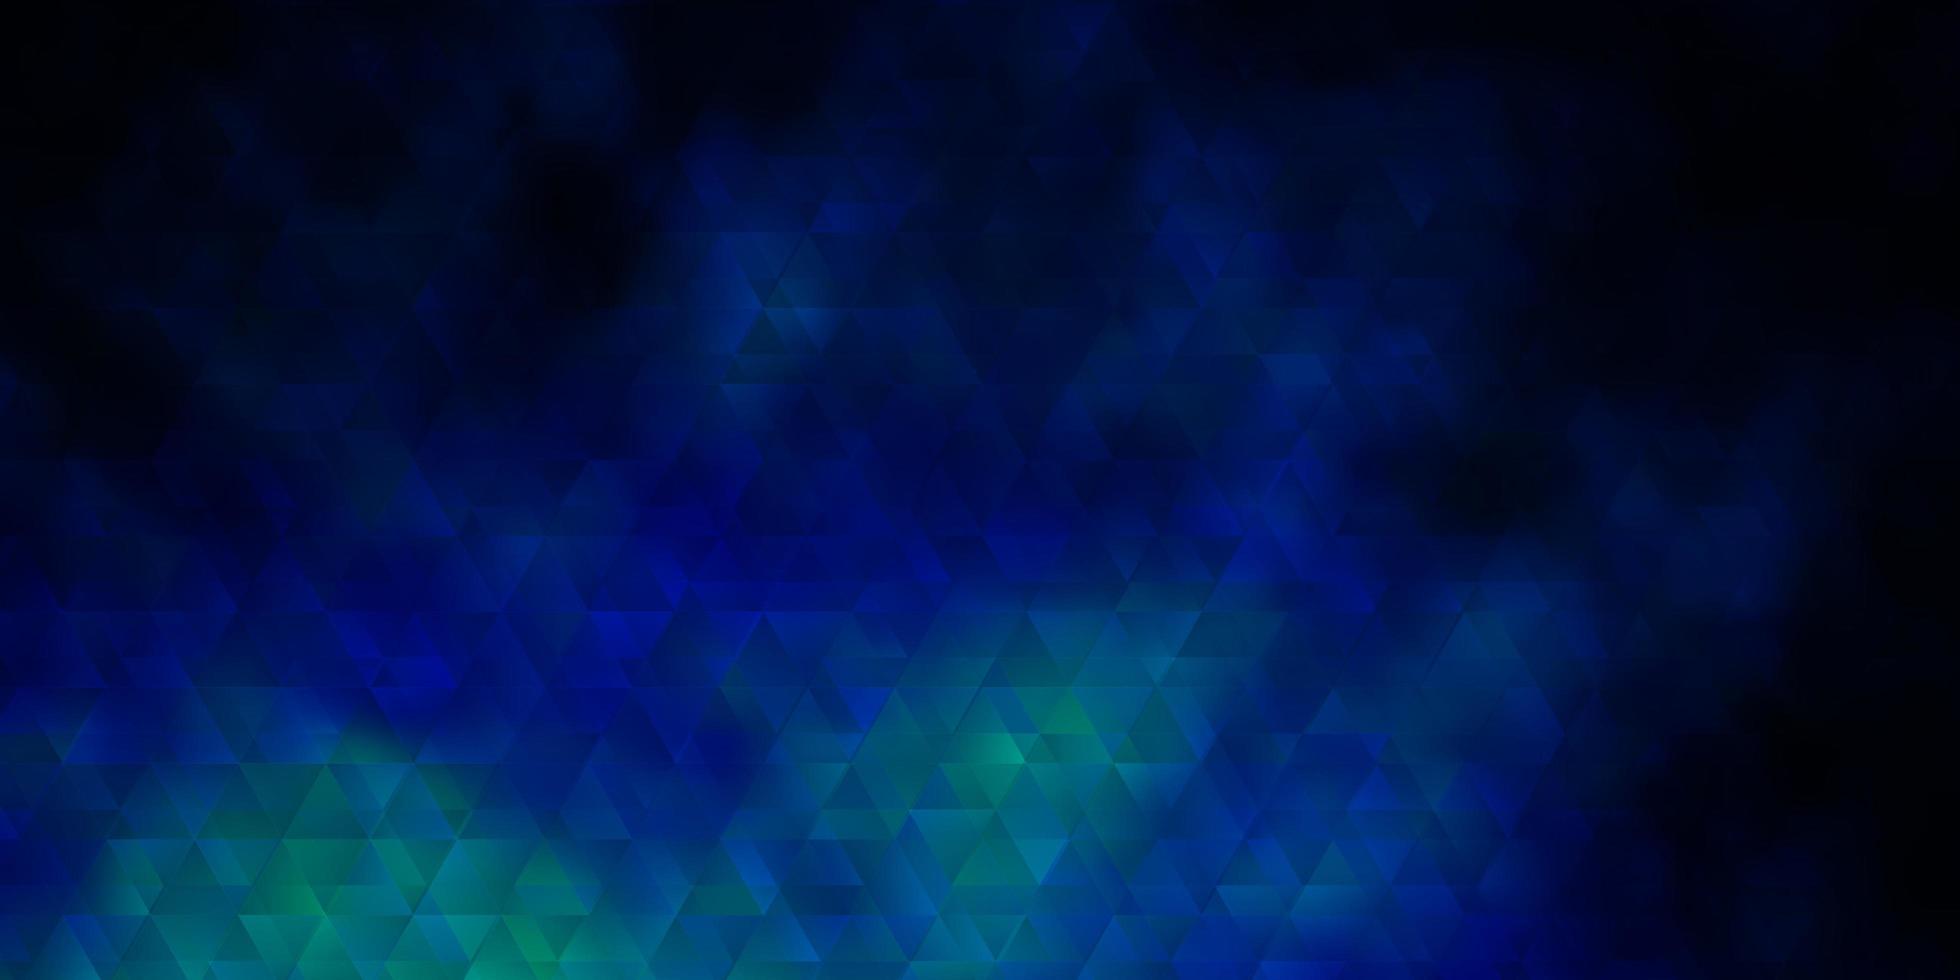 modelo de vetor azul escuro com linhas, triângulos.